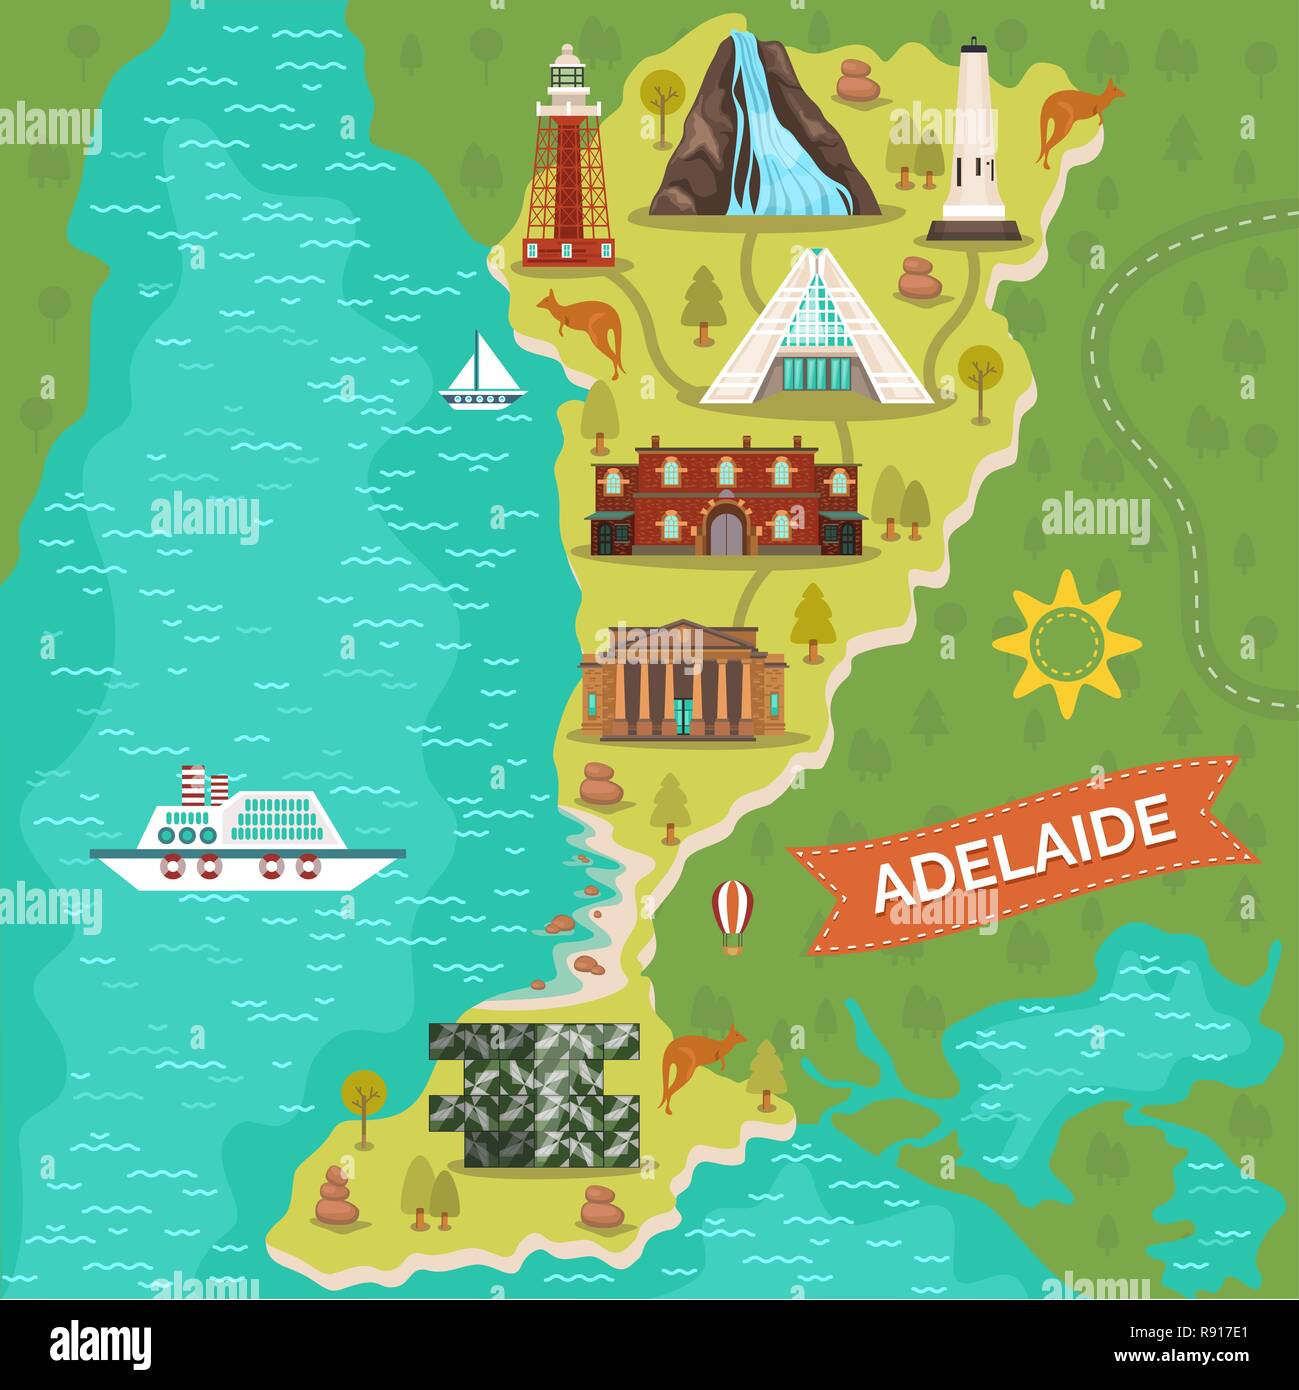 Adelaide landmarks on travel map. Australian city Stock Vector